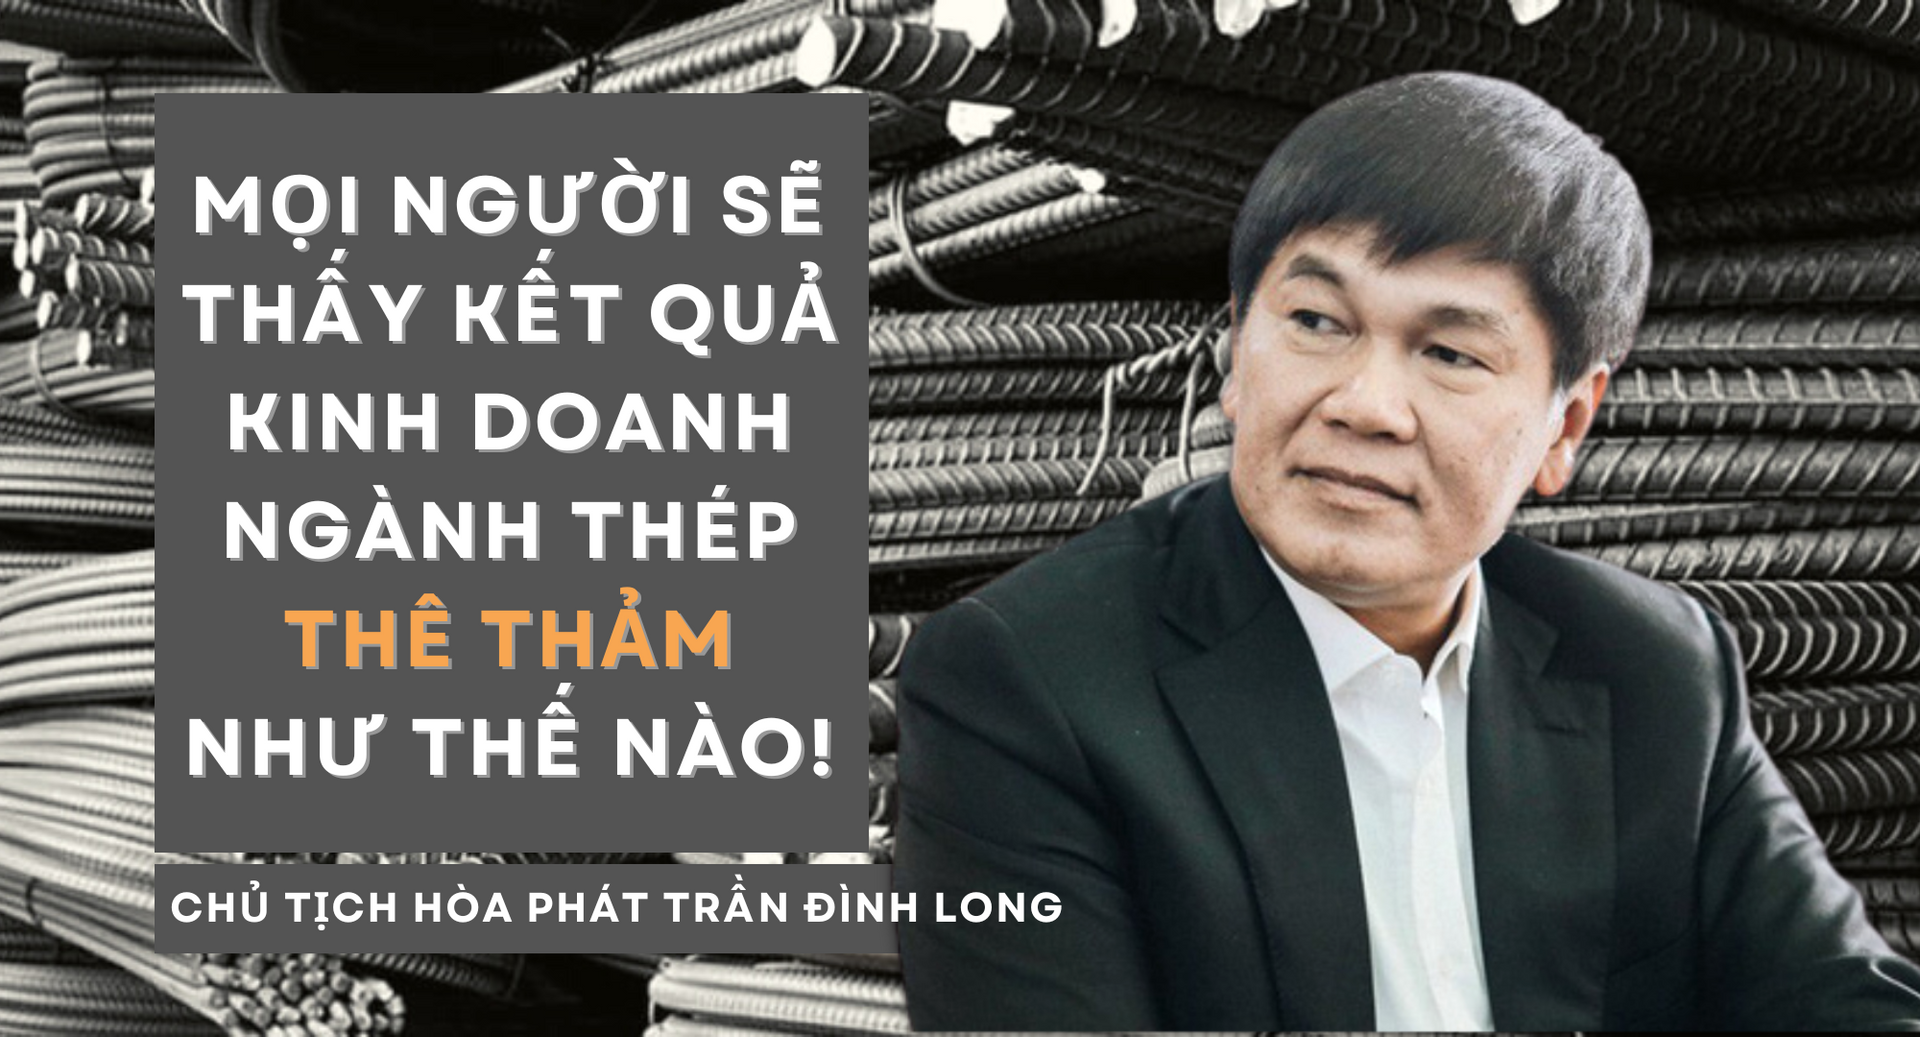 Big 6 ngành thép lỗ tổng cộng 4.500 tỷ, lời cảnh cáo “thê thảm” của ông Trần Đình Long đã thực sự ứng nghiệm